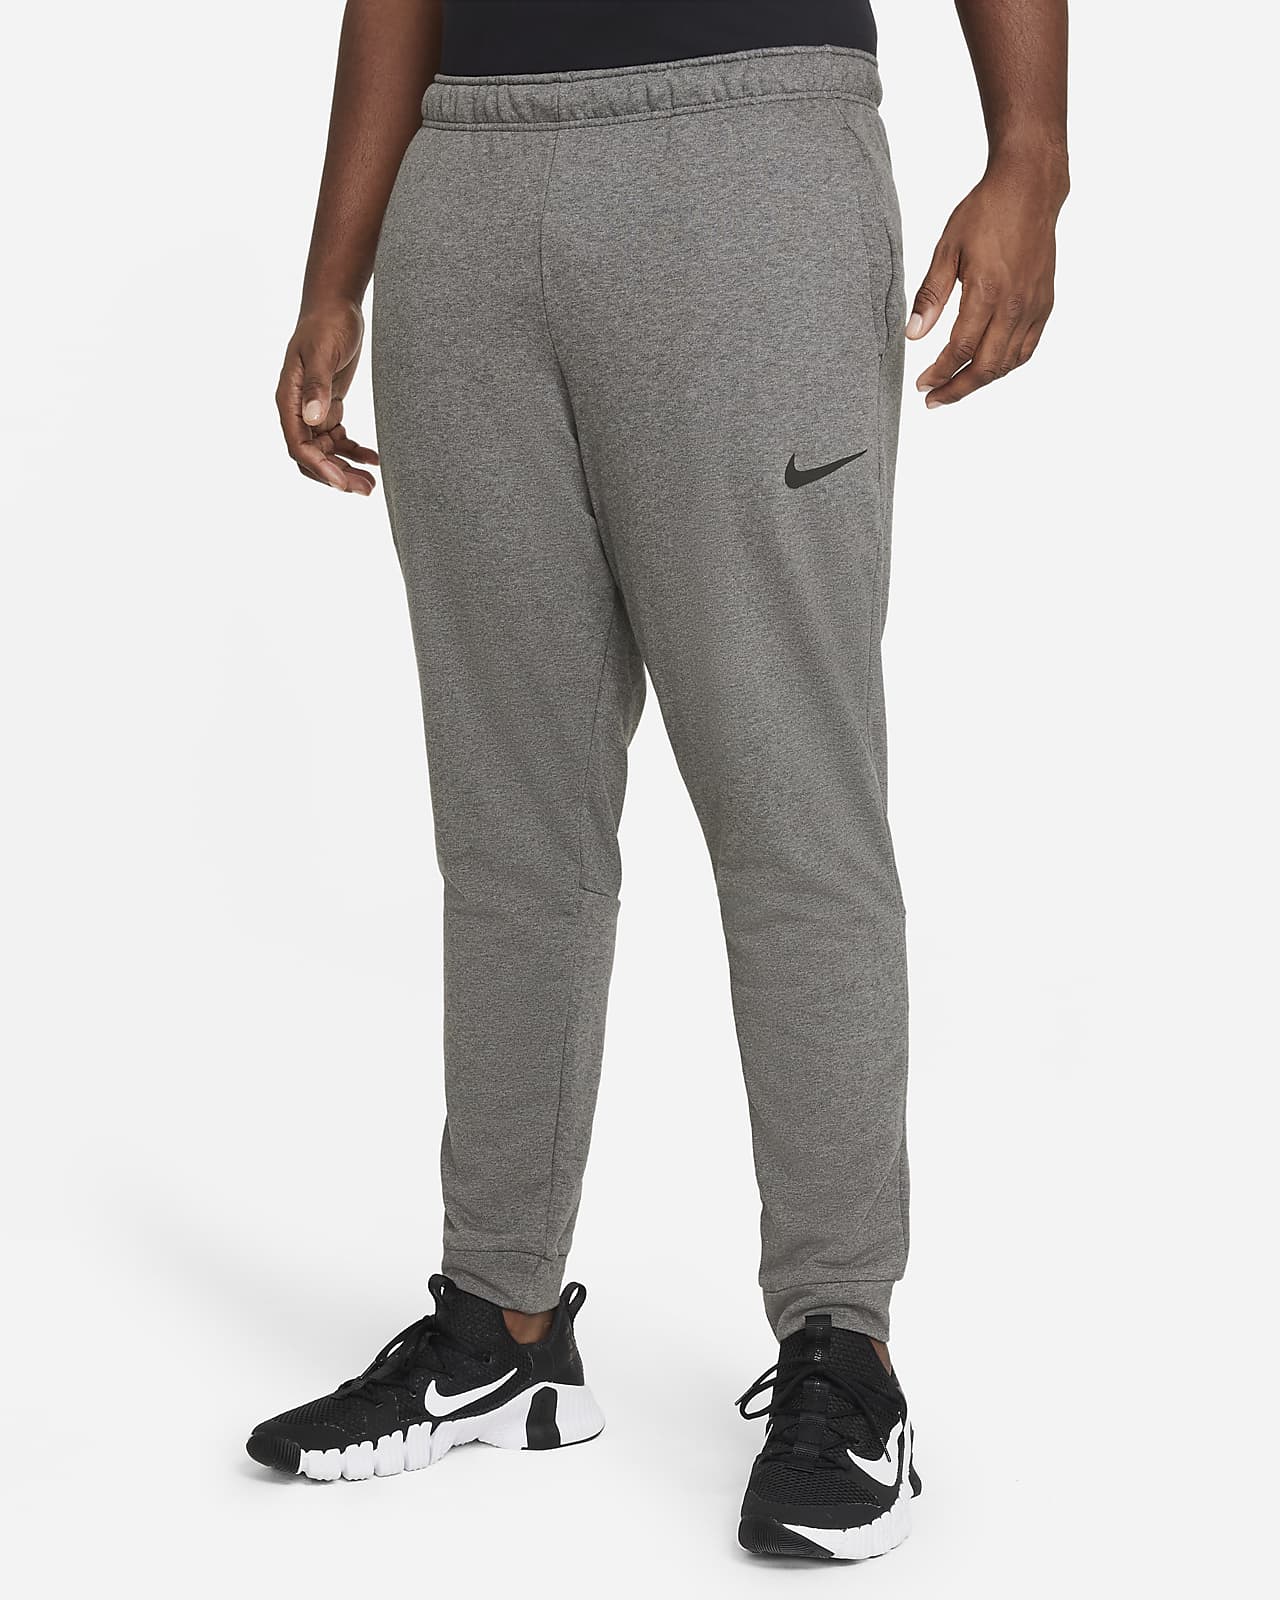 Men's Nike Phenom Elite Running Gym Pants CU5504 010 Size XL